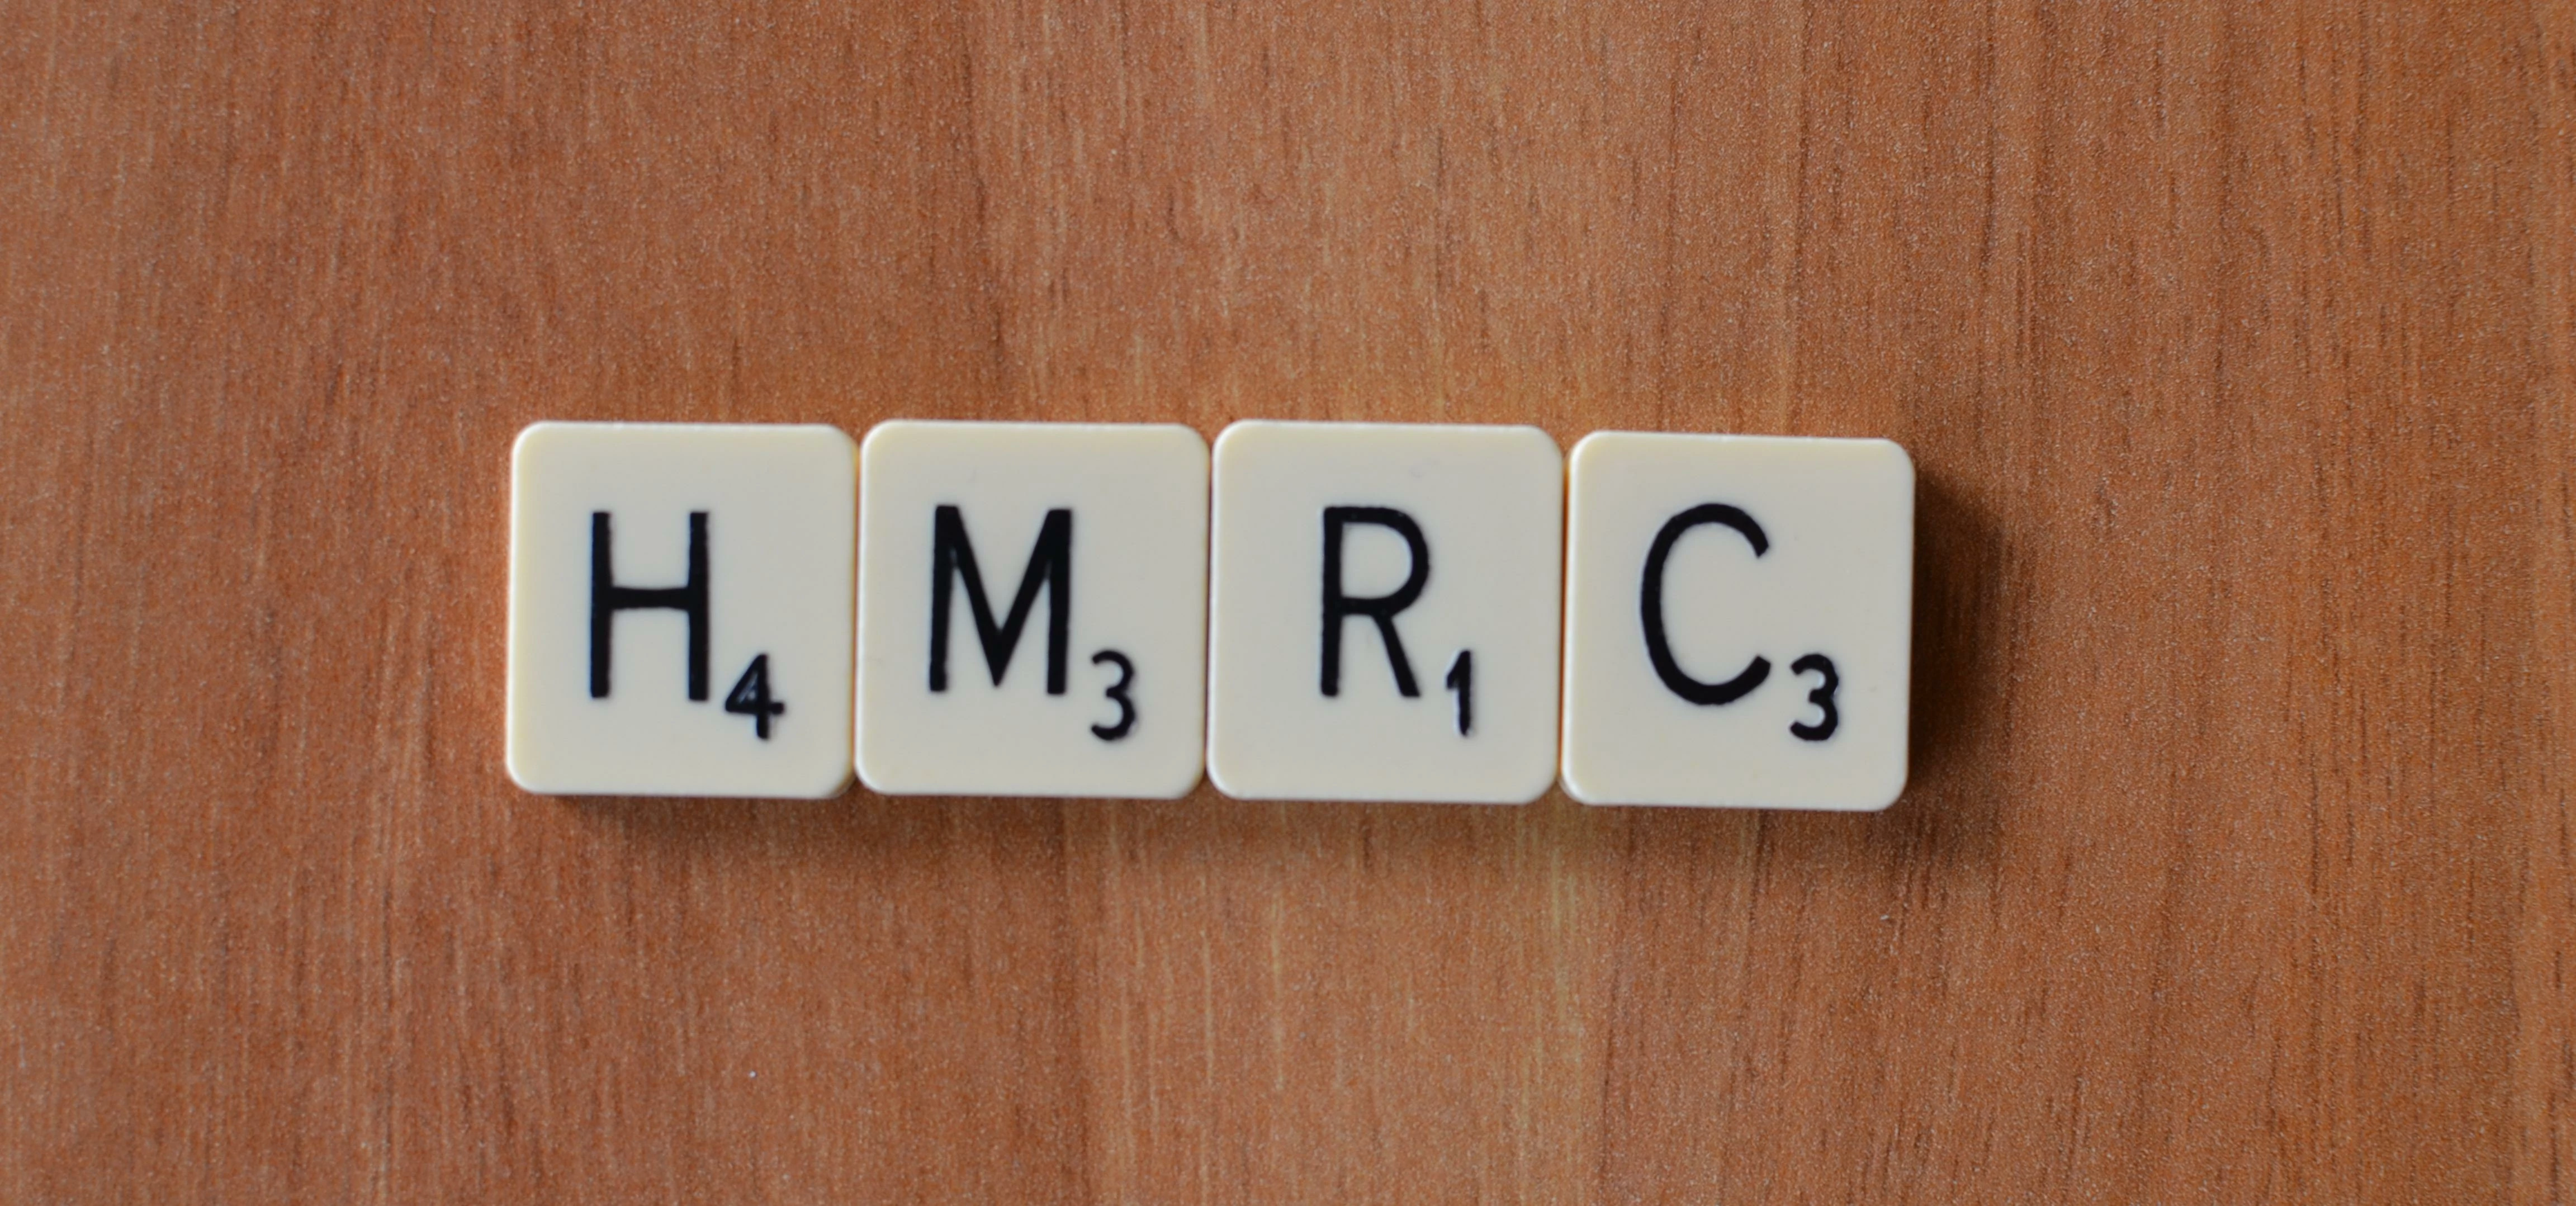 HMRC Scrabble